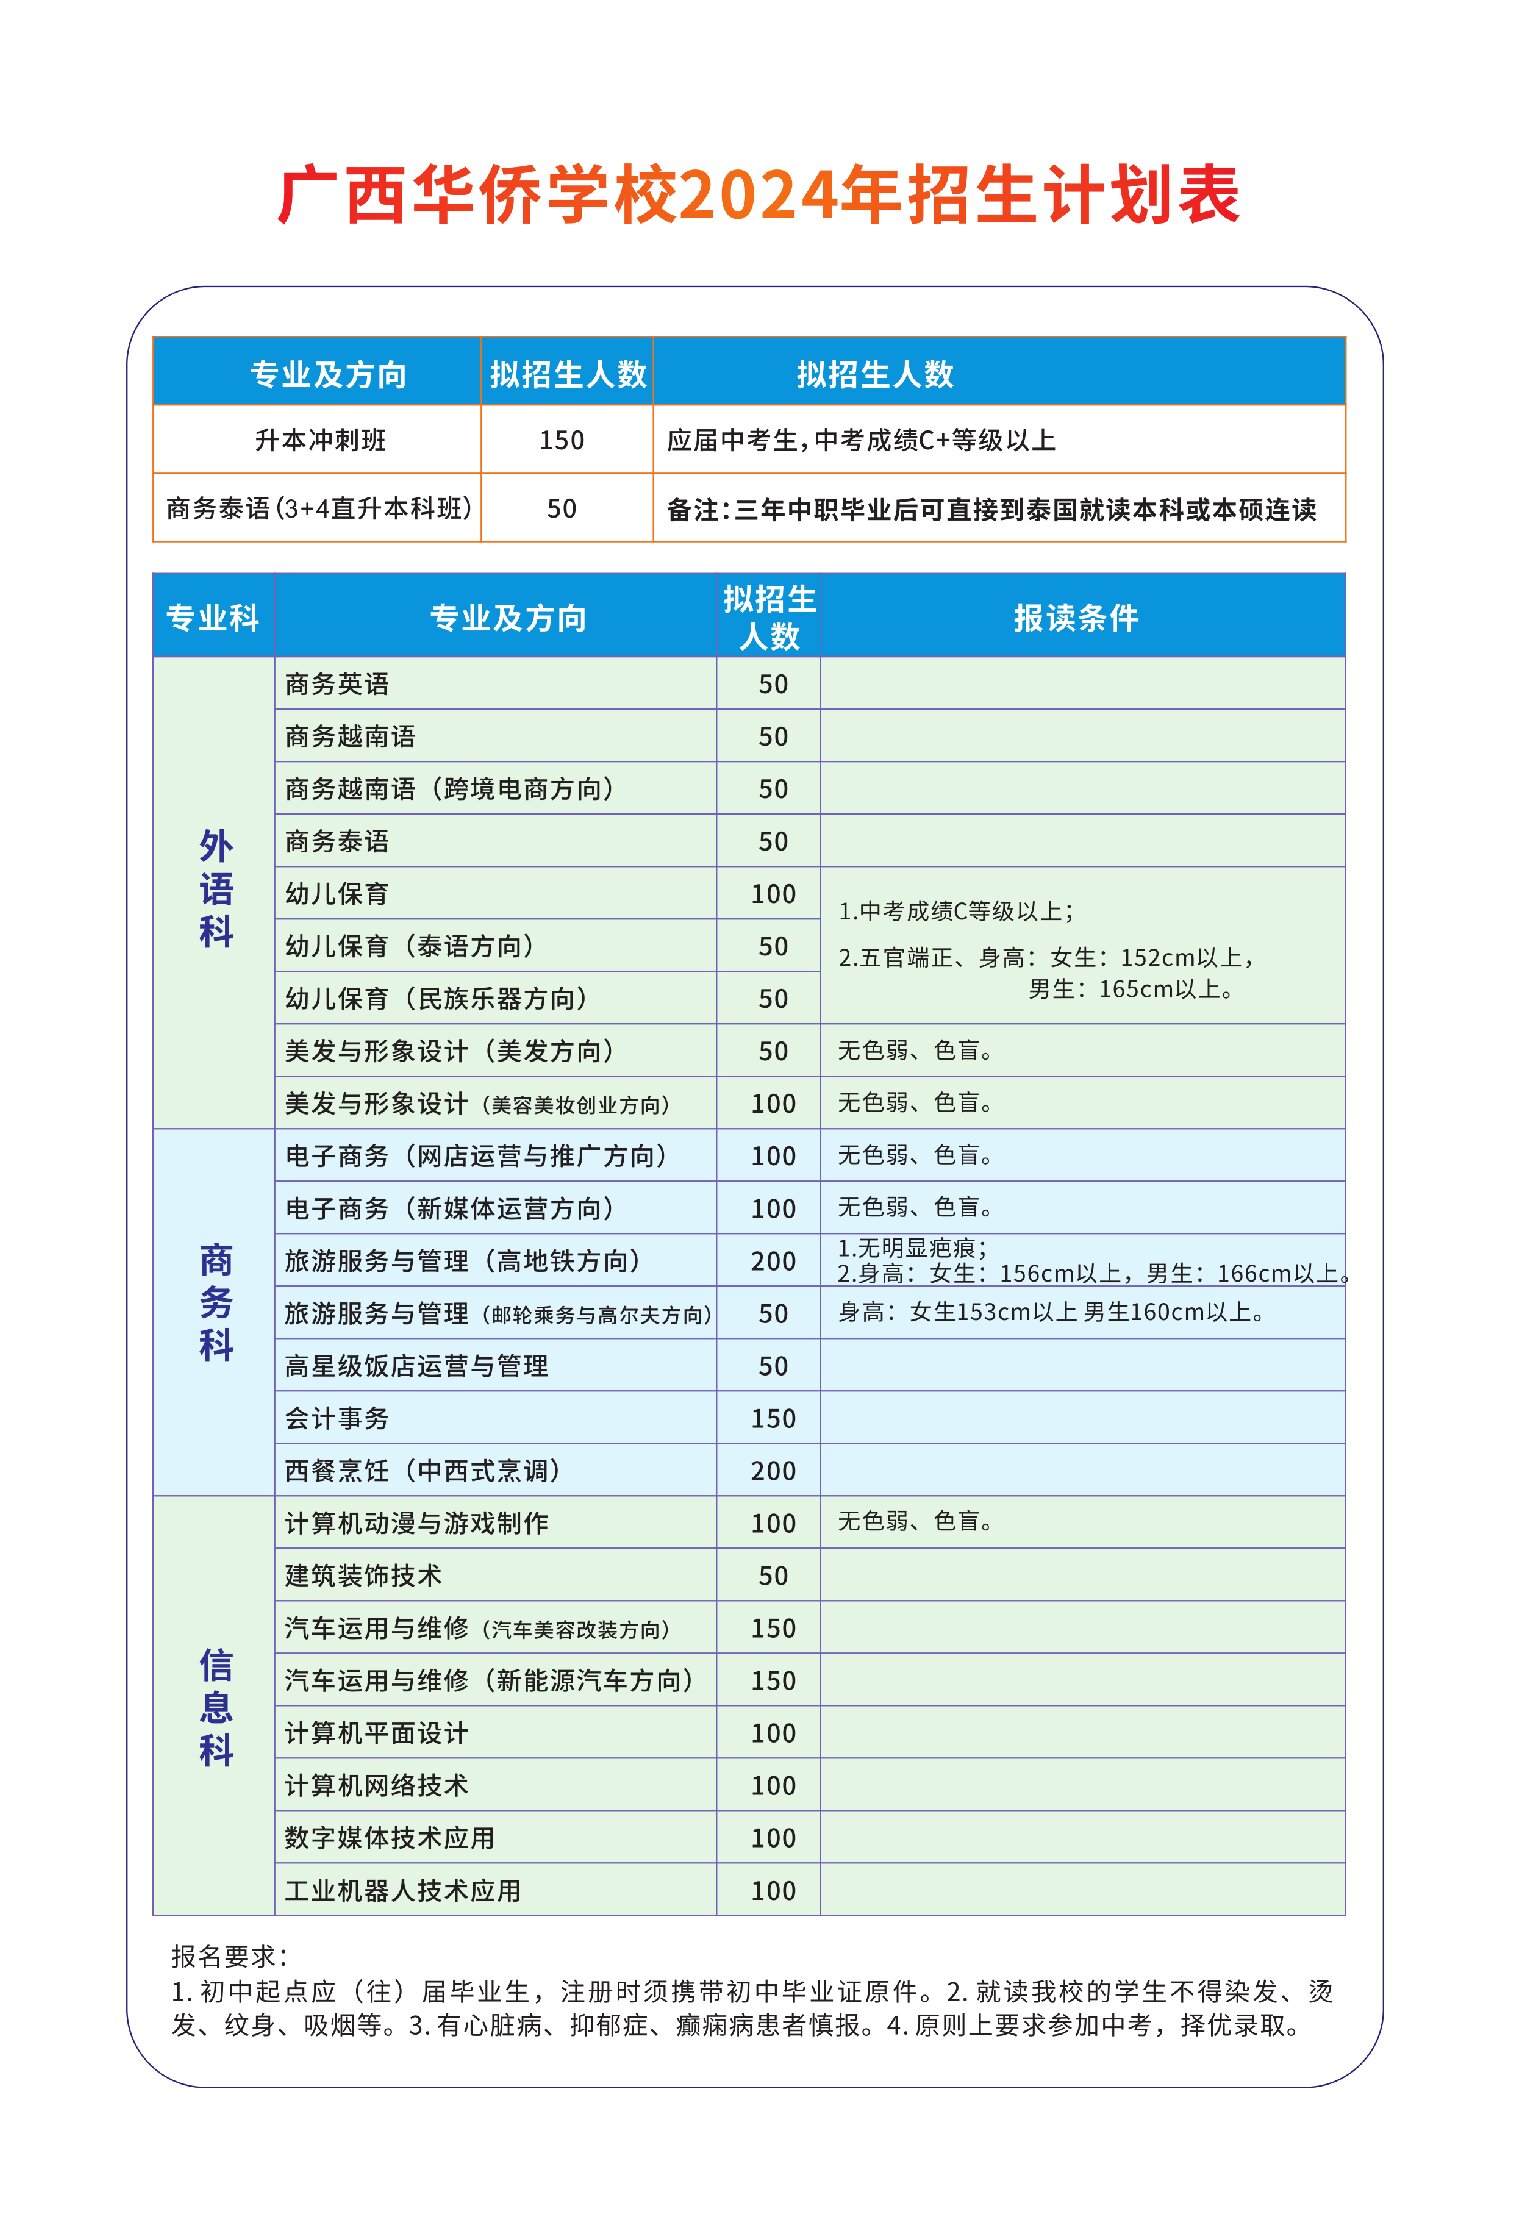 24-4-14华侨学校电子画册无背景色_13_proc1.jpg